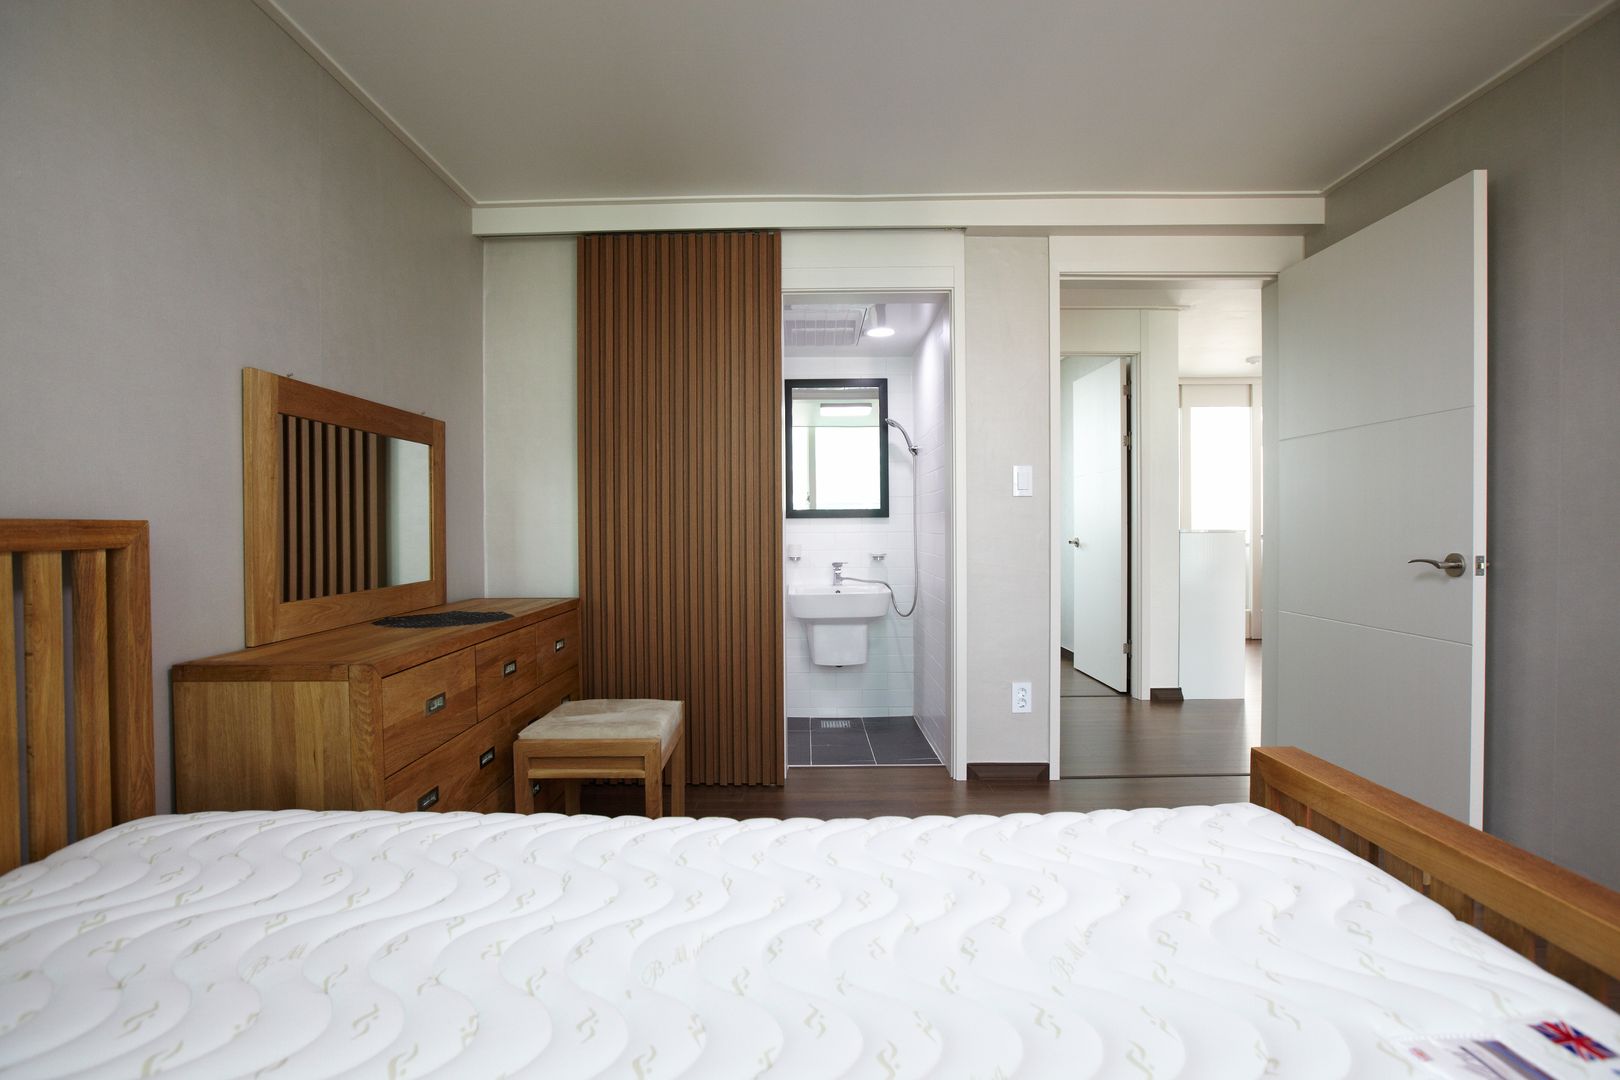 homify Dormitorios modernos: Ideas, imágenes y decoración